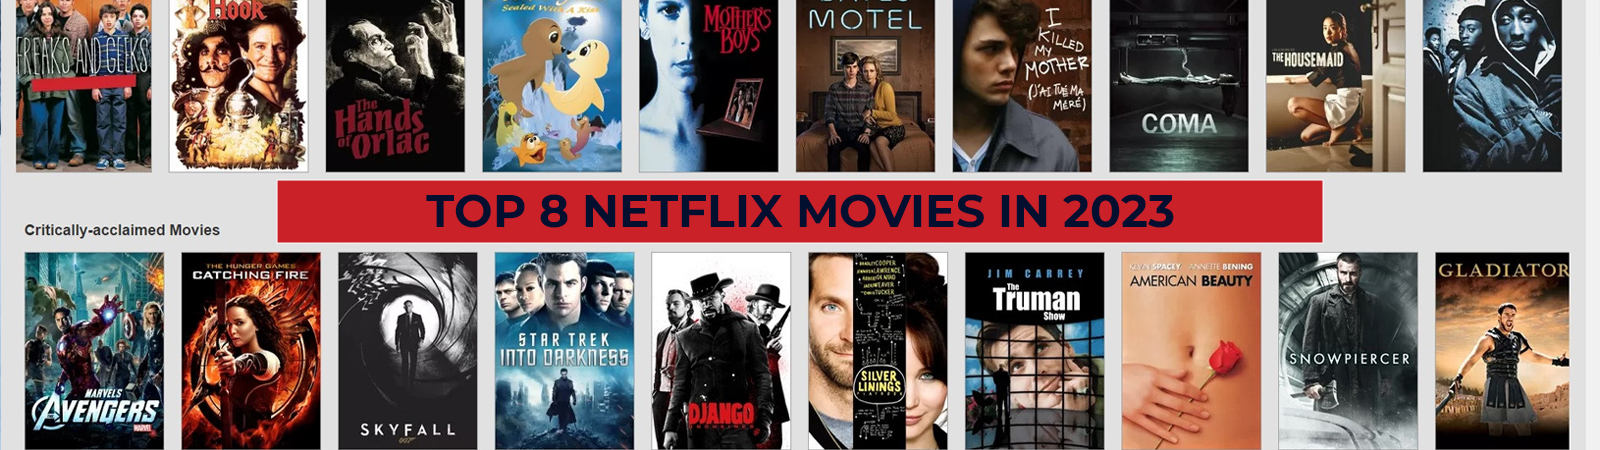 Top 8 Netflix Movies in 2023